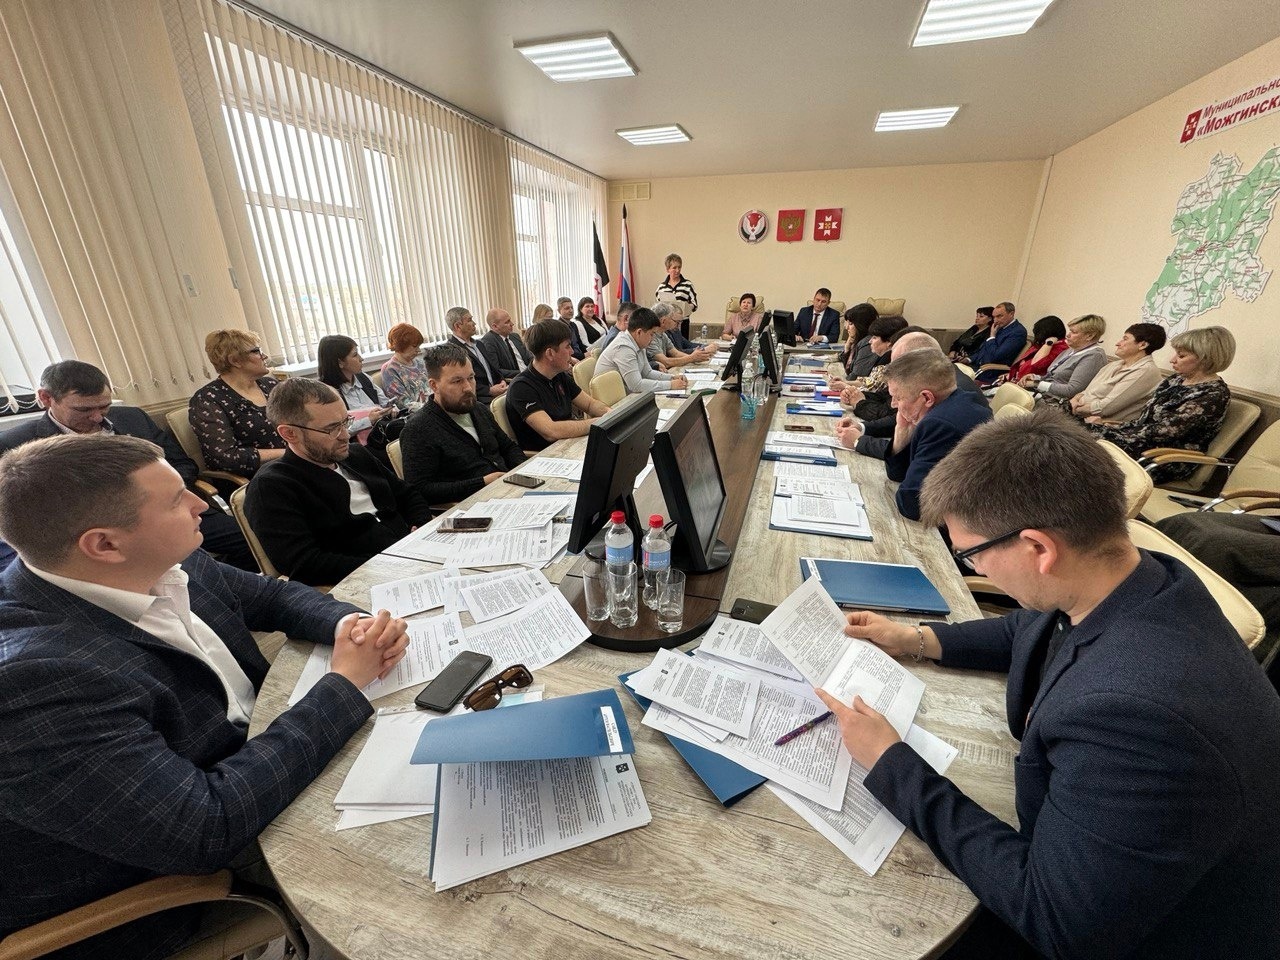 20-я сессия Совета депутатов Можгинского района состоялась 3 апреля в зале заседаний Администрации района под председательством Галины Петровны Корольковой.